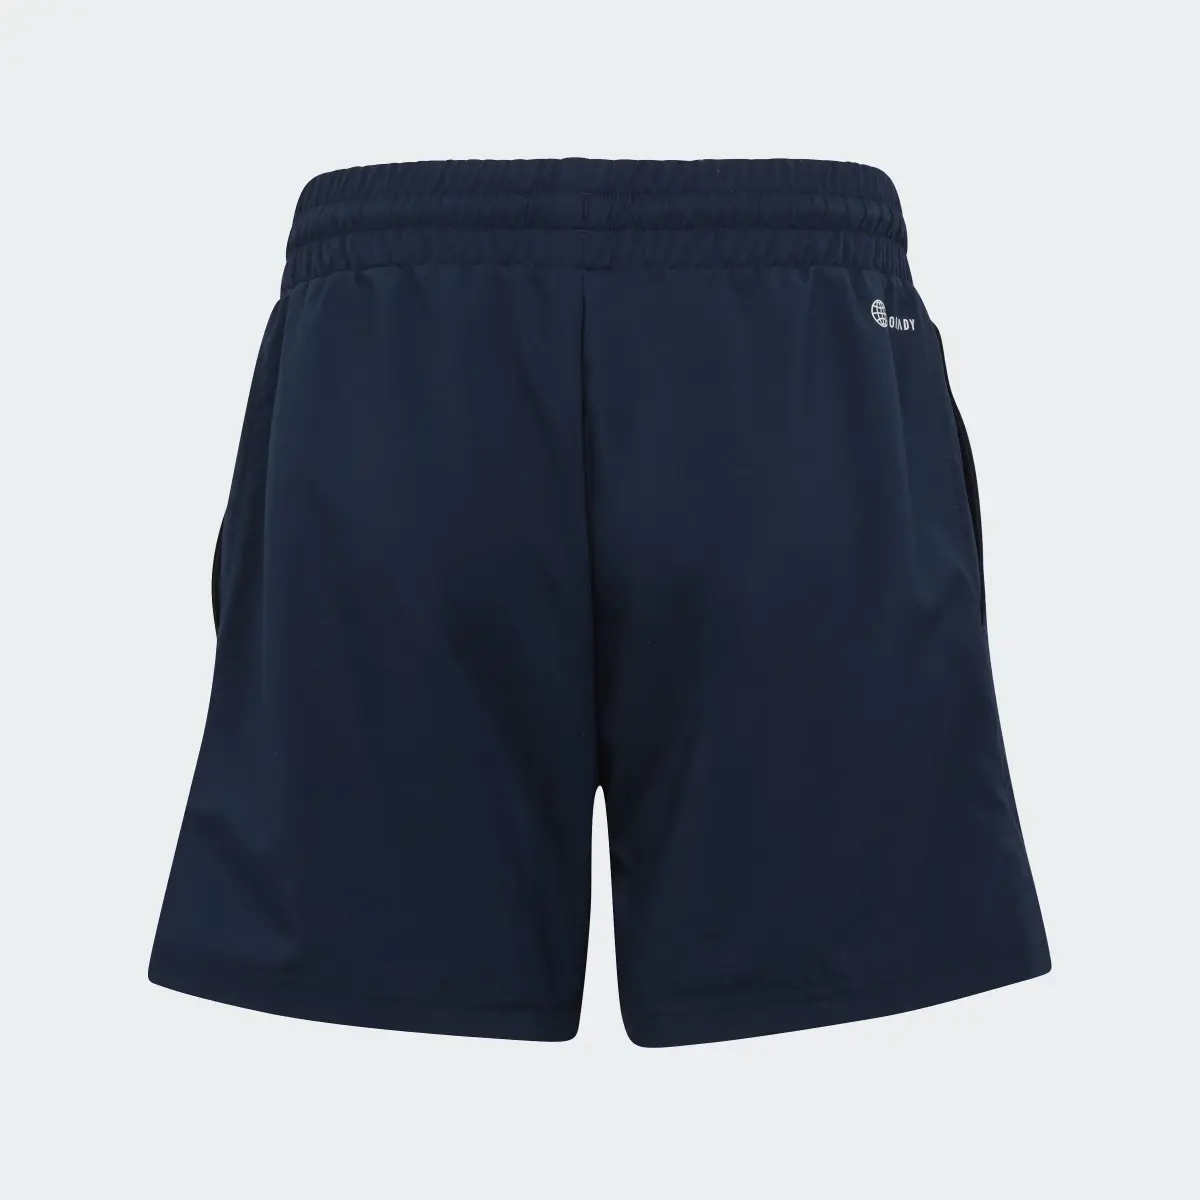 Adidas Club Tennis 3-Stripes Shorts. 2